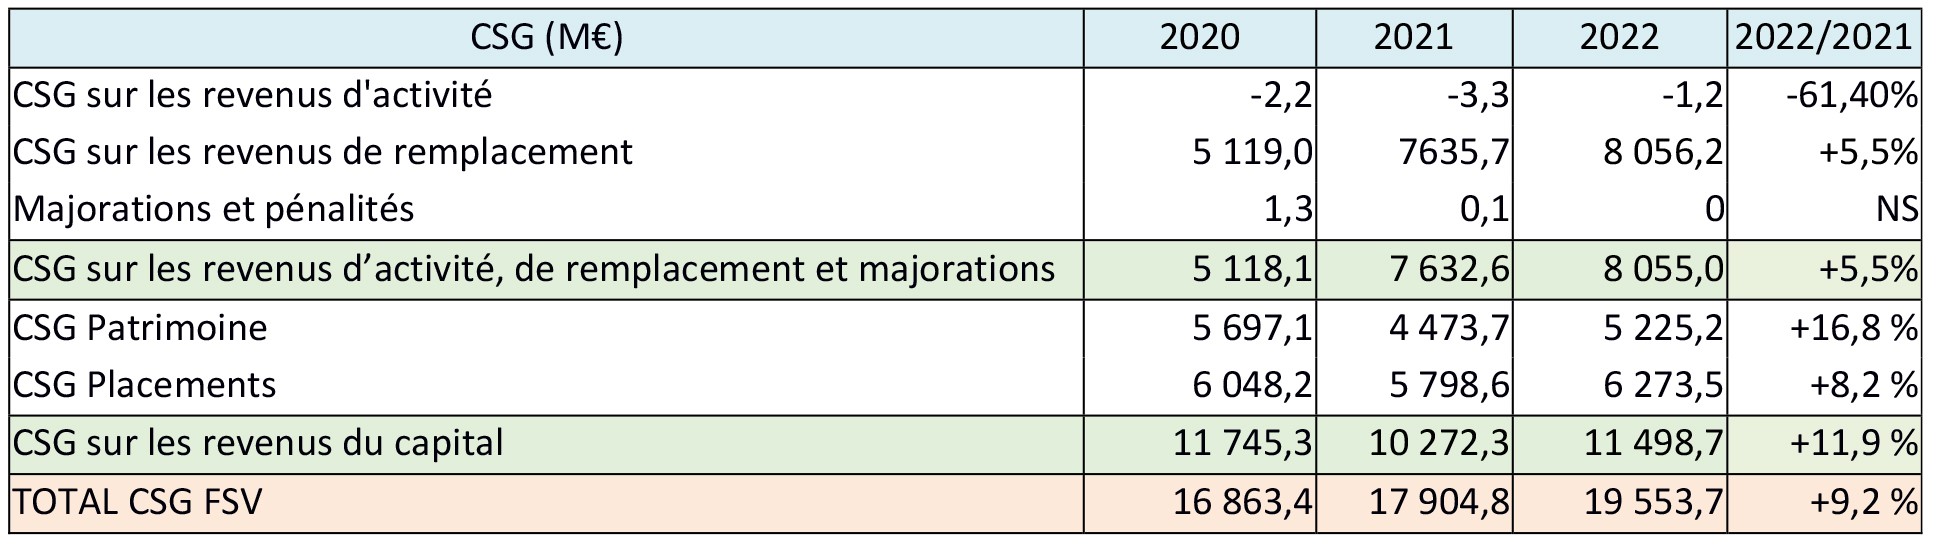 RENDEMENTS DE LA CSG ATTRIBUEE AU FSV PAR NATURE DE REVENUS DE 2020 A 2022 (EN M€)